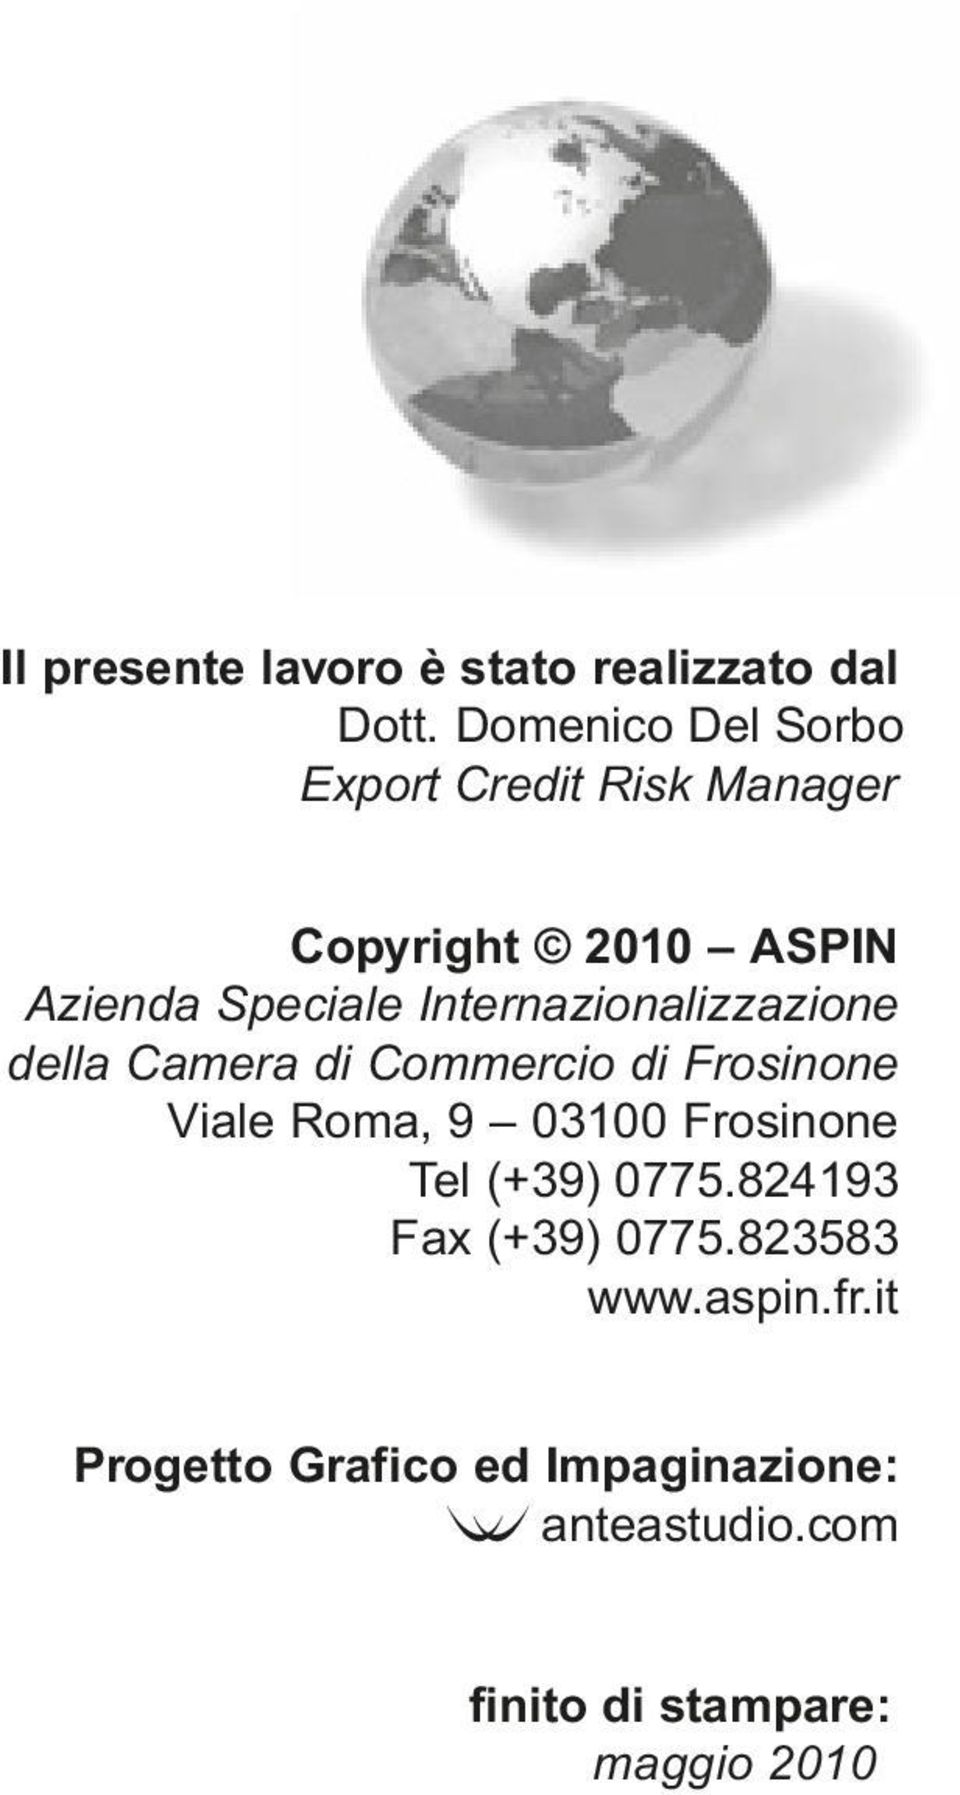 Internazionalizzazione della Camera di Commercio di Frosinone Viale Roma, 9 03100 Frosinone